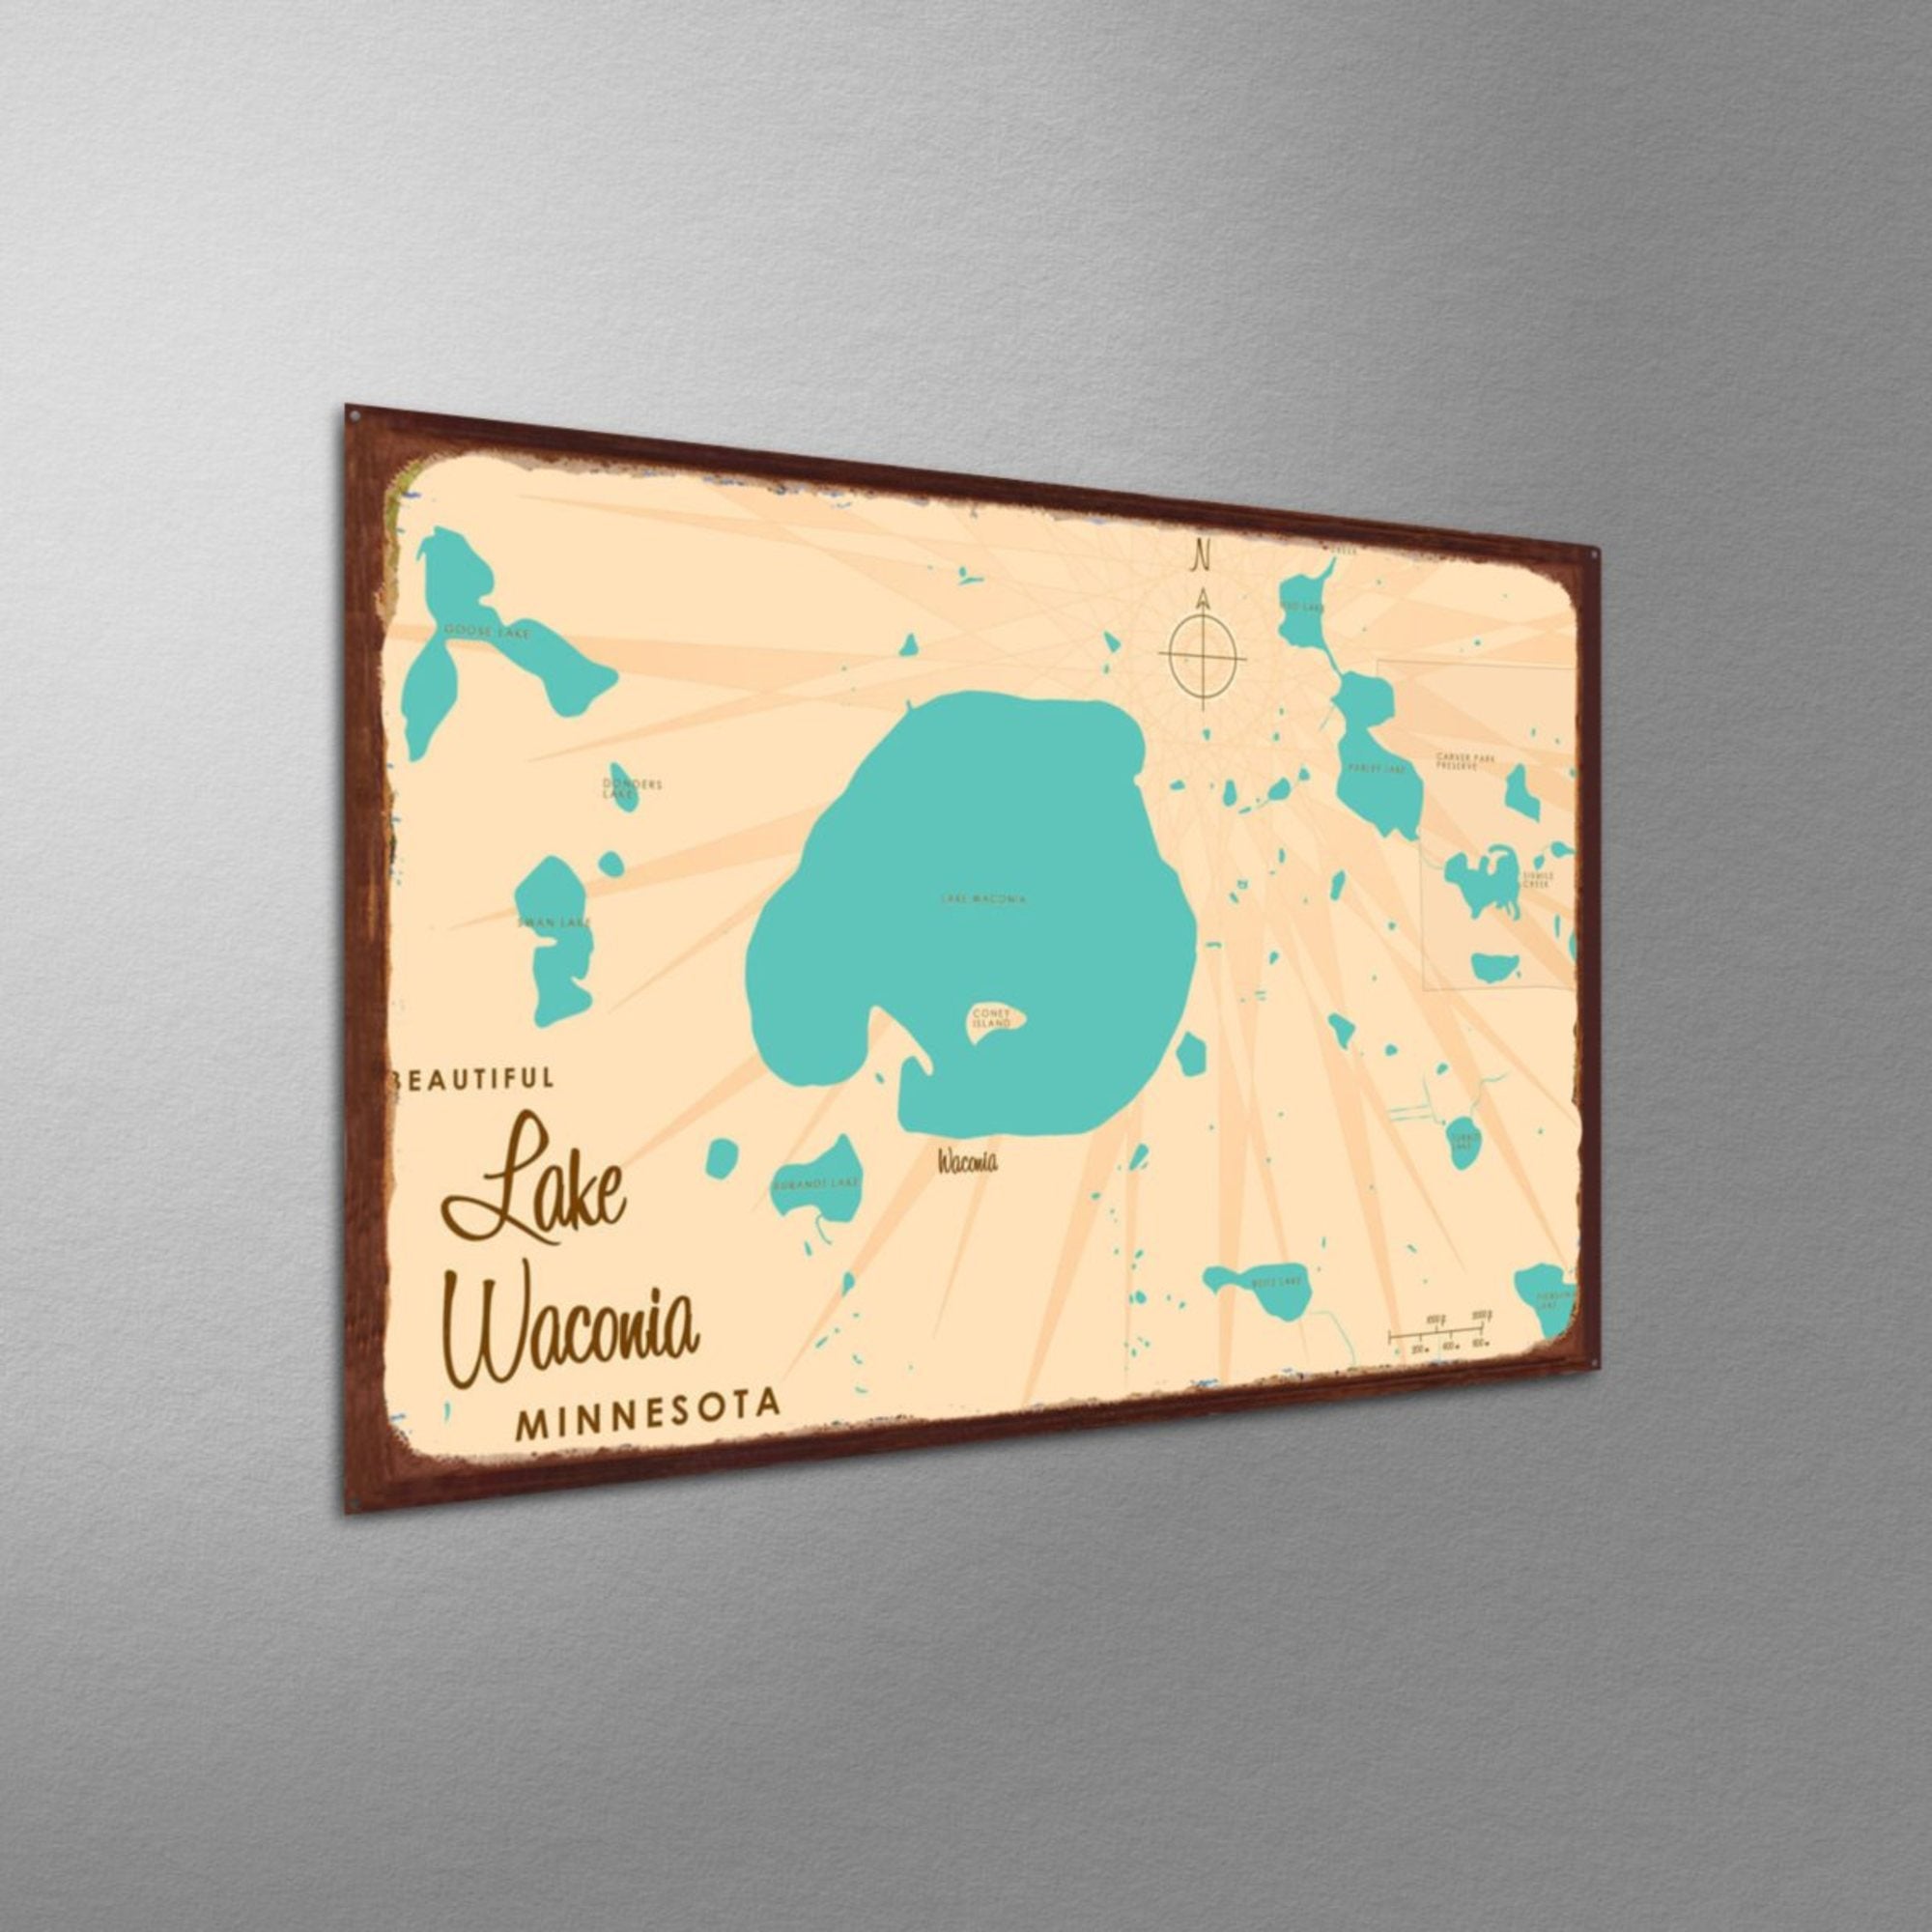 Lake Waconia Minnesota, Rustic Metal Sign Map Art